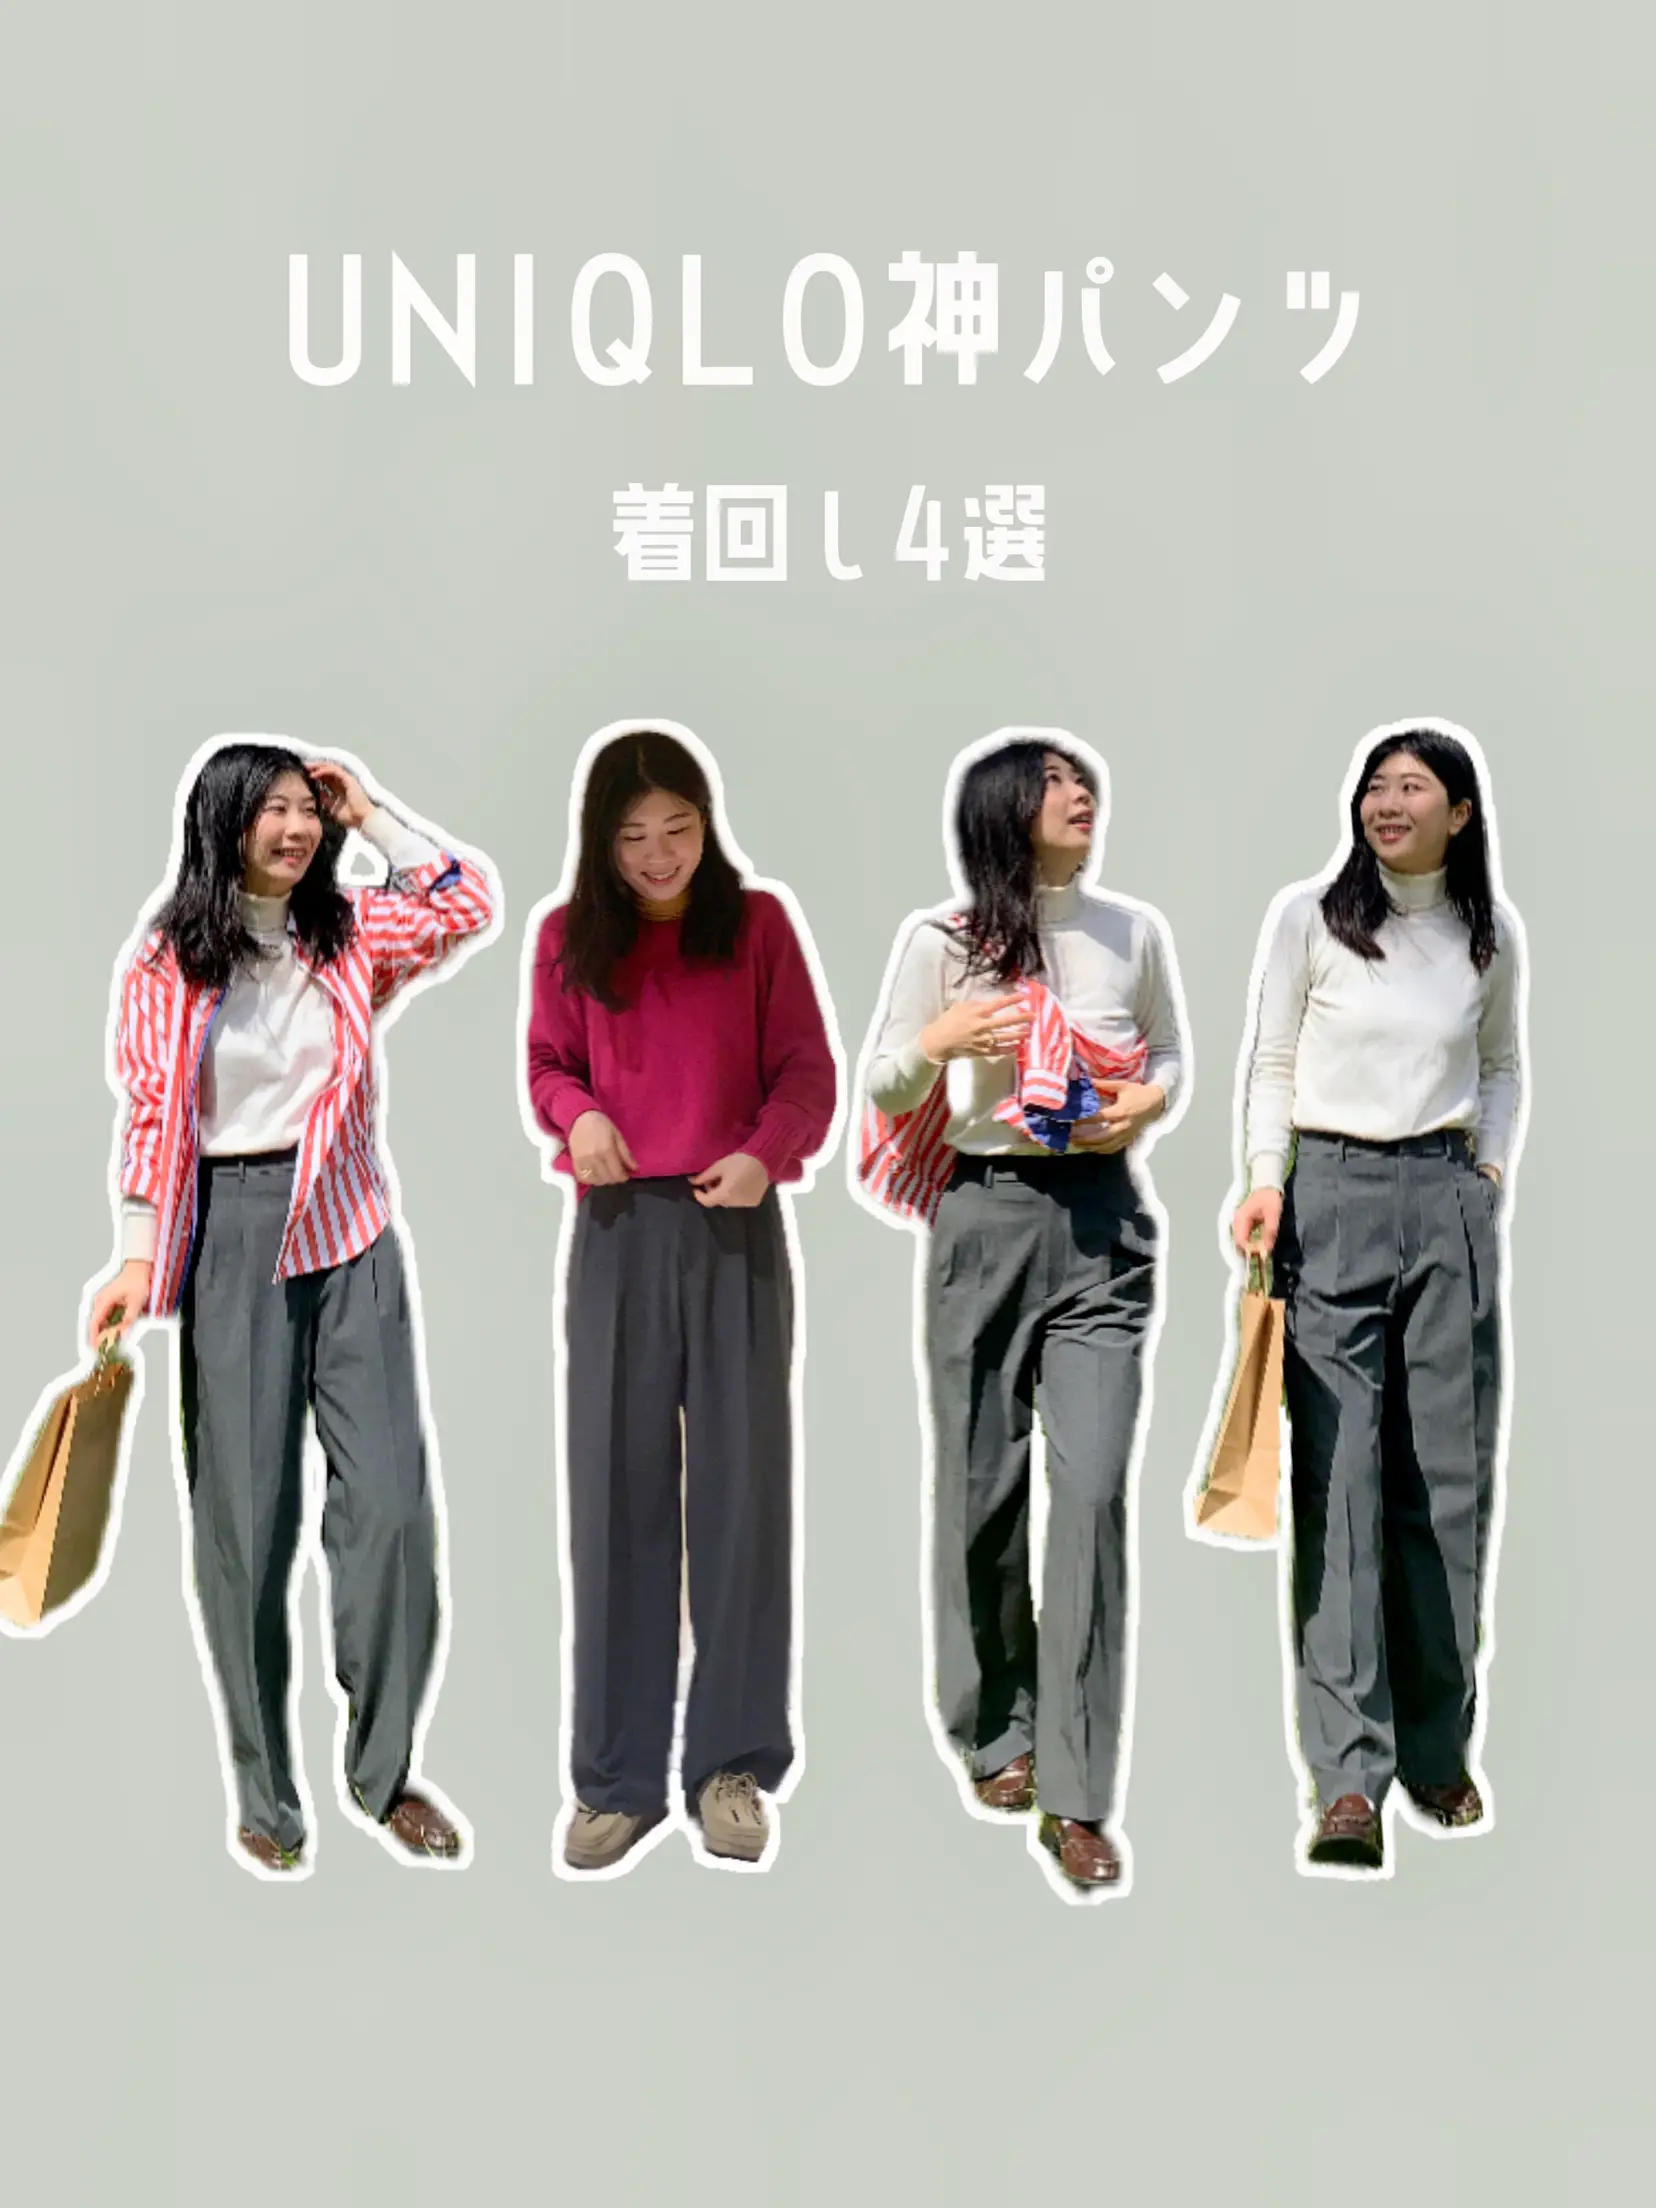 UNIQLO神パンツ】iタイプが着るタックワイドパンツで着回し4選